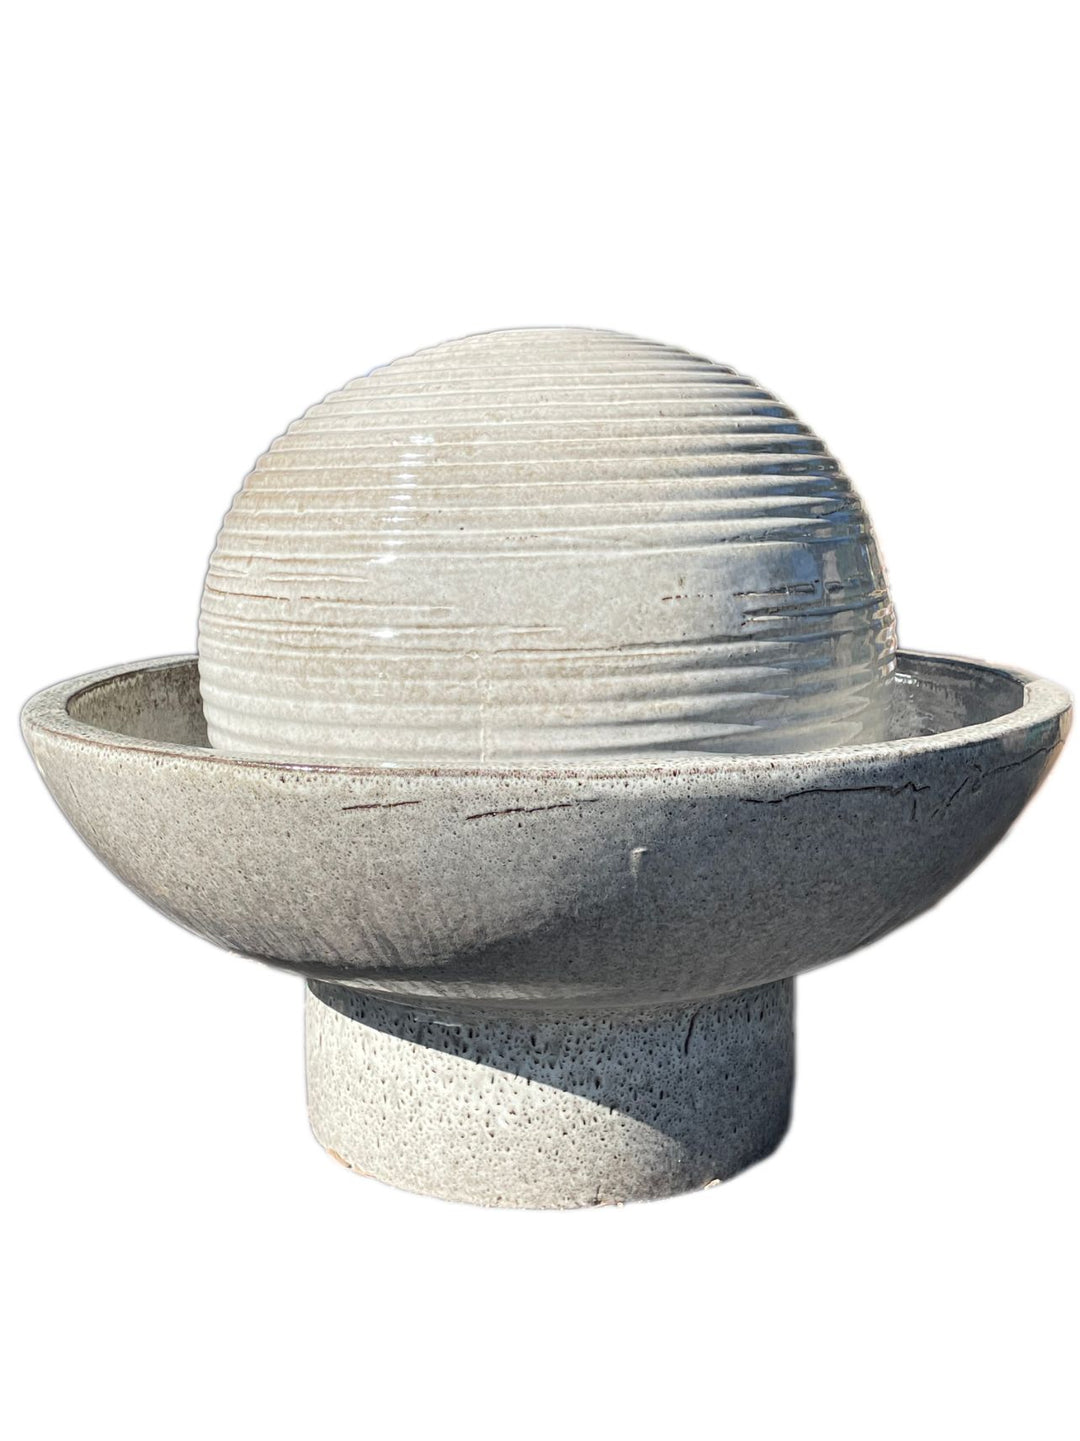 White Tiger  Ceramic Sphere Fountain | Ten Thousand Pots